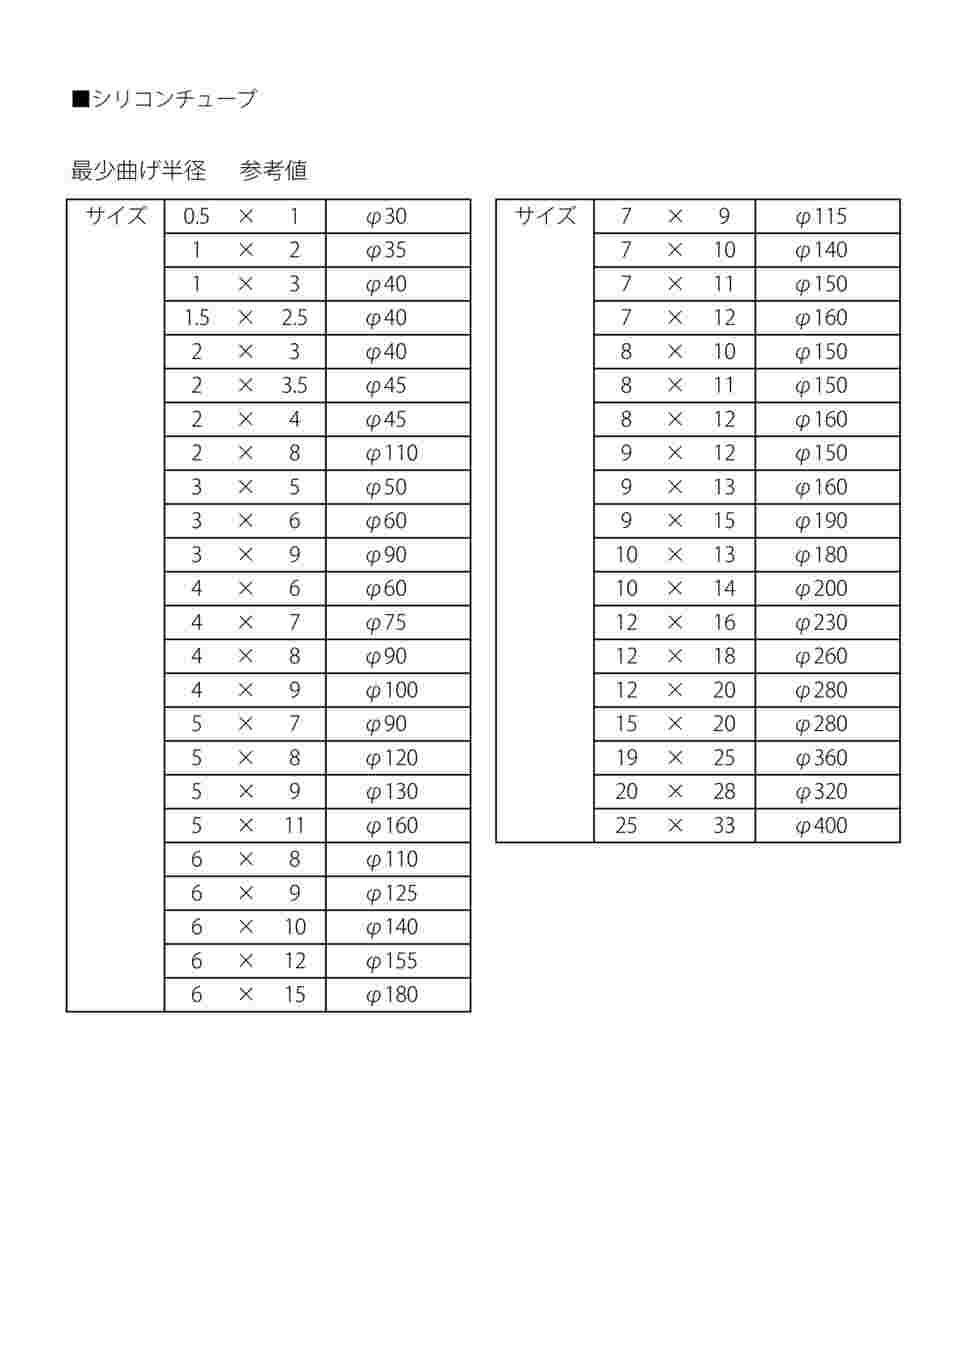 9-869-01 ラボラン(R)シリコンチューブ 0.5×1 1巻(11m) 【AXEL】 アズワン